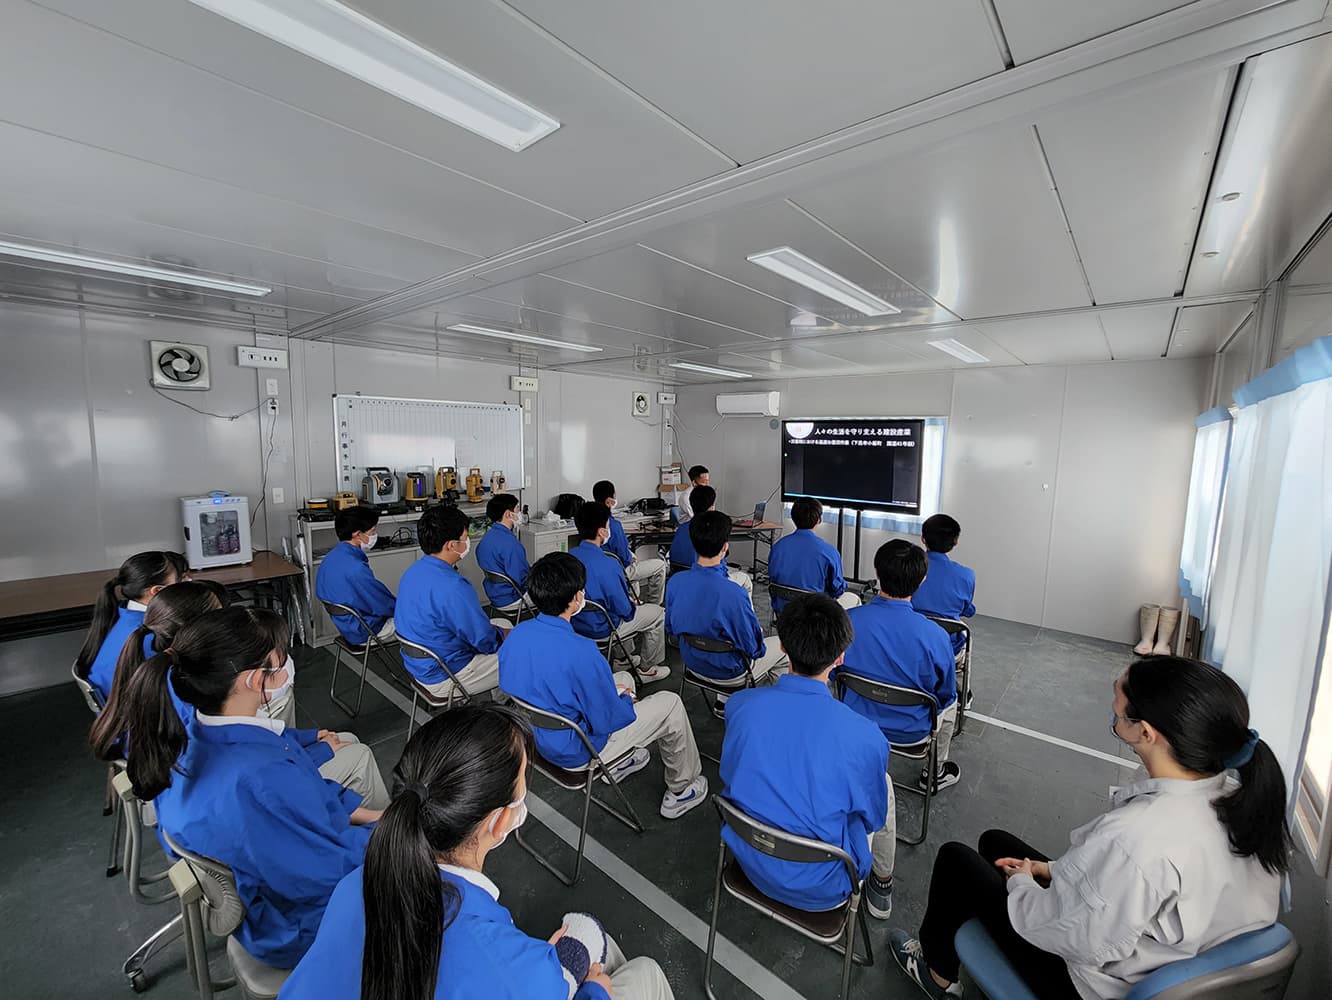 『過去・未来・現在の建設現場』と題して岐阜総合学園の生徒への体験講習会を実施しました。